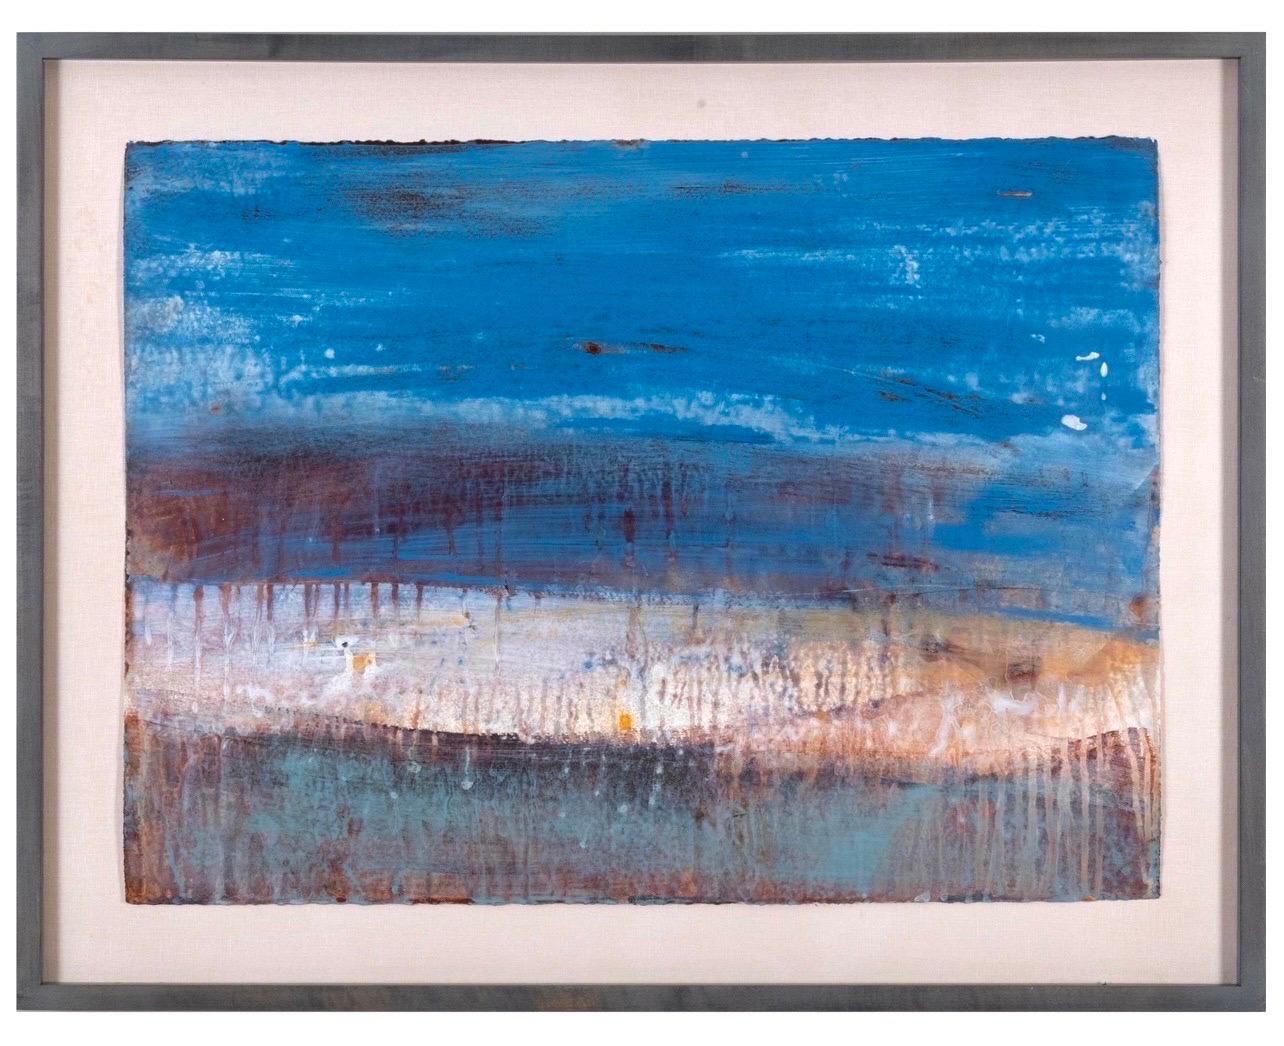 Shawn Dulaney Abstract Painting – Abstrakt-expressionistische Tugenden, Landschaft, venezianisches Gipsgemälde, Schal Dulaney